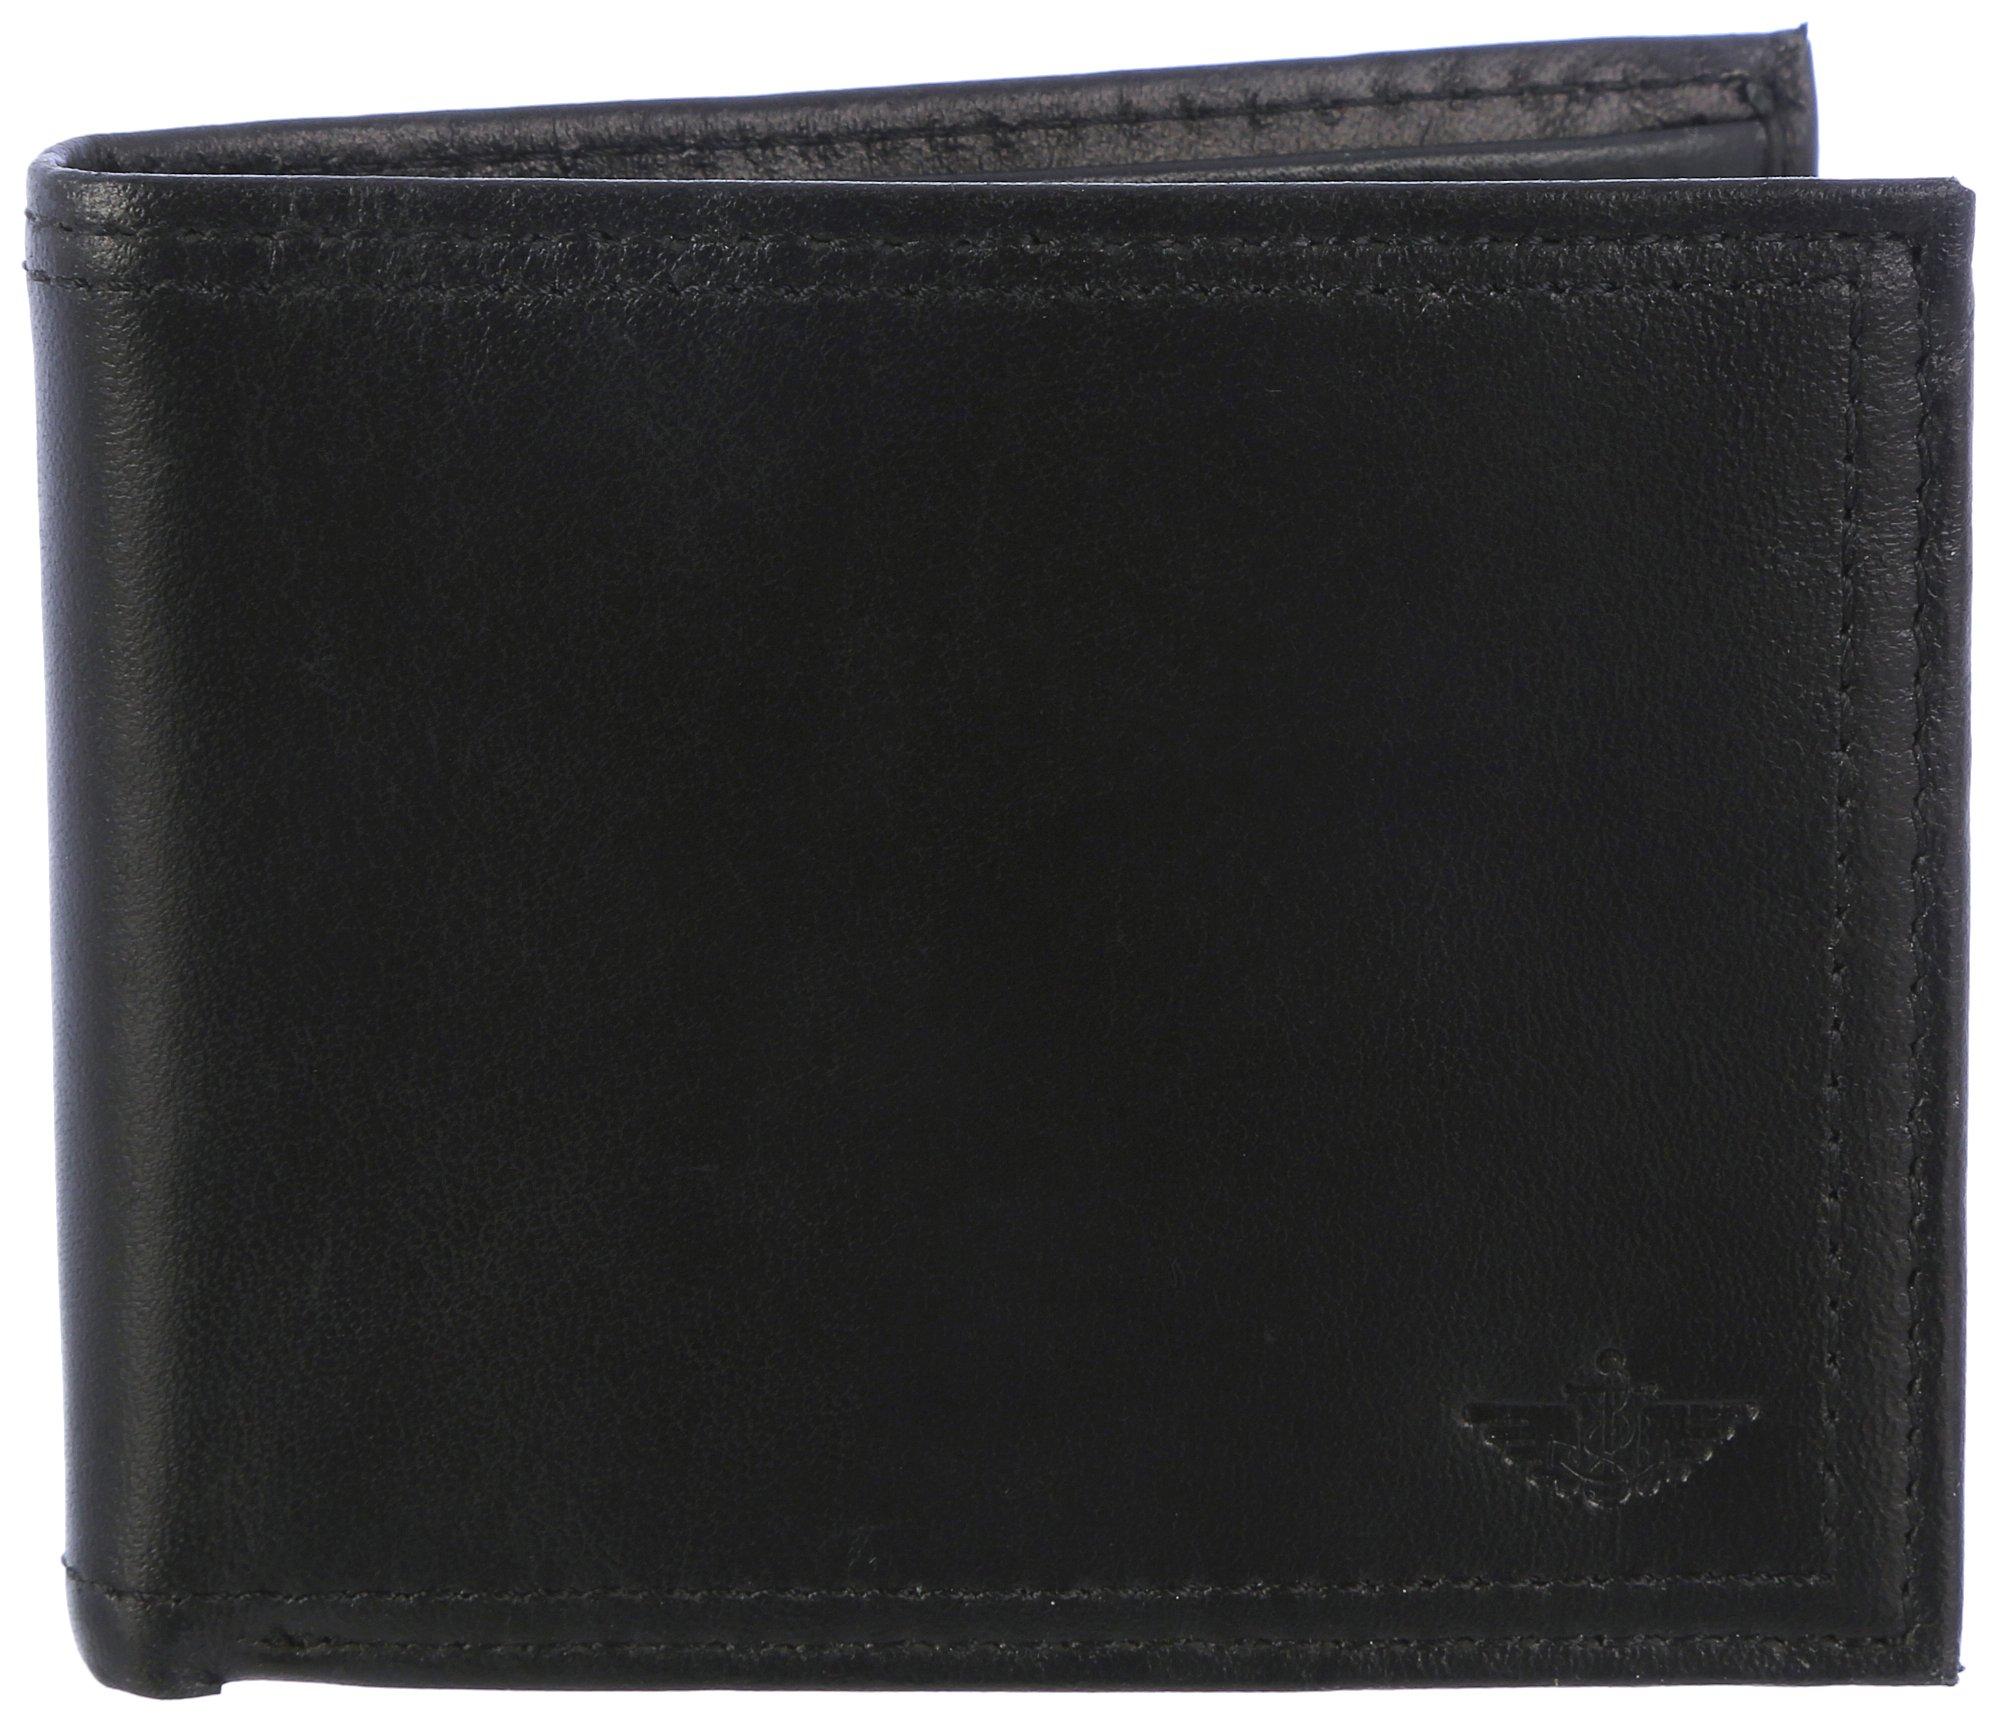 Dockers Mens RFID Genuine Leather Bifold Wallet